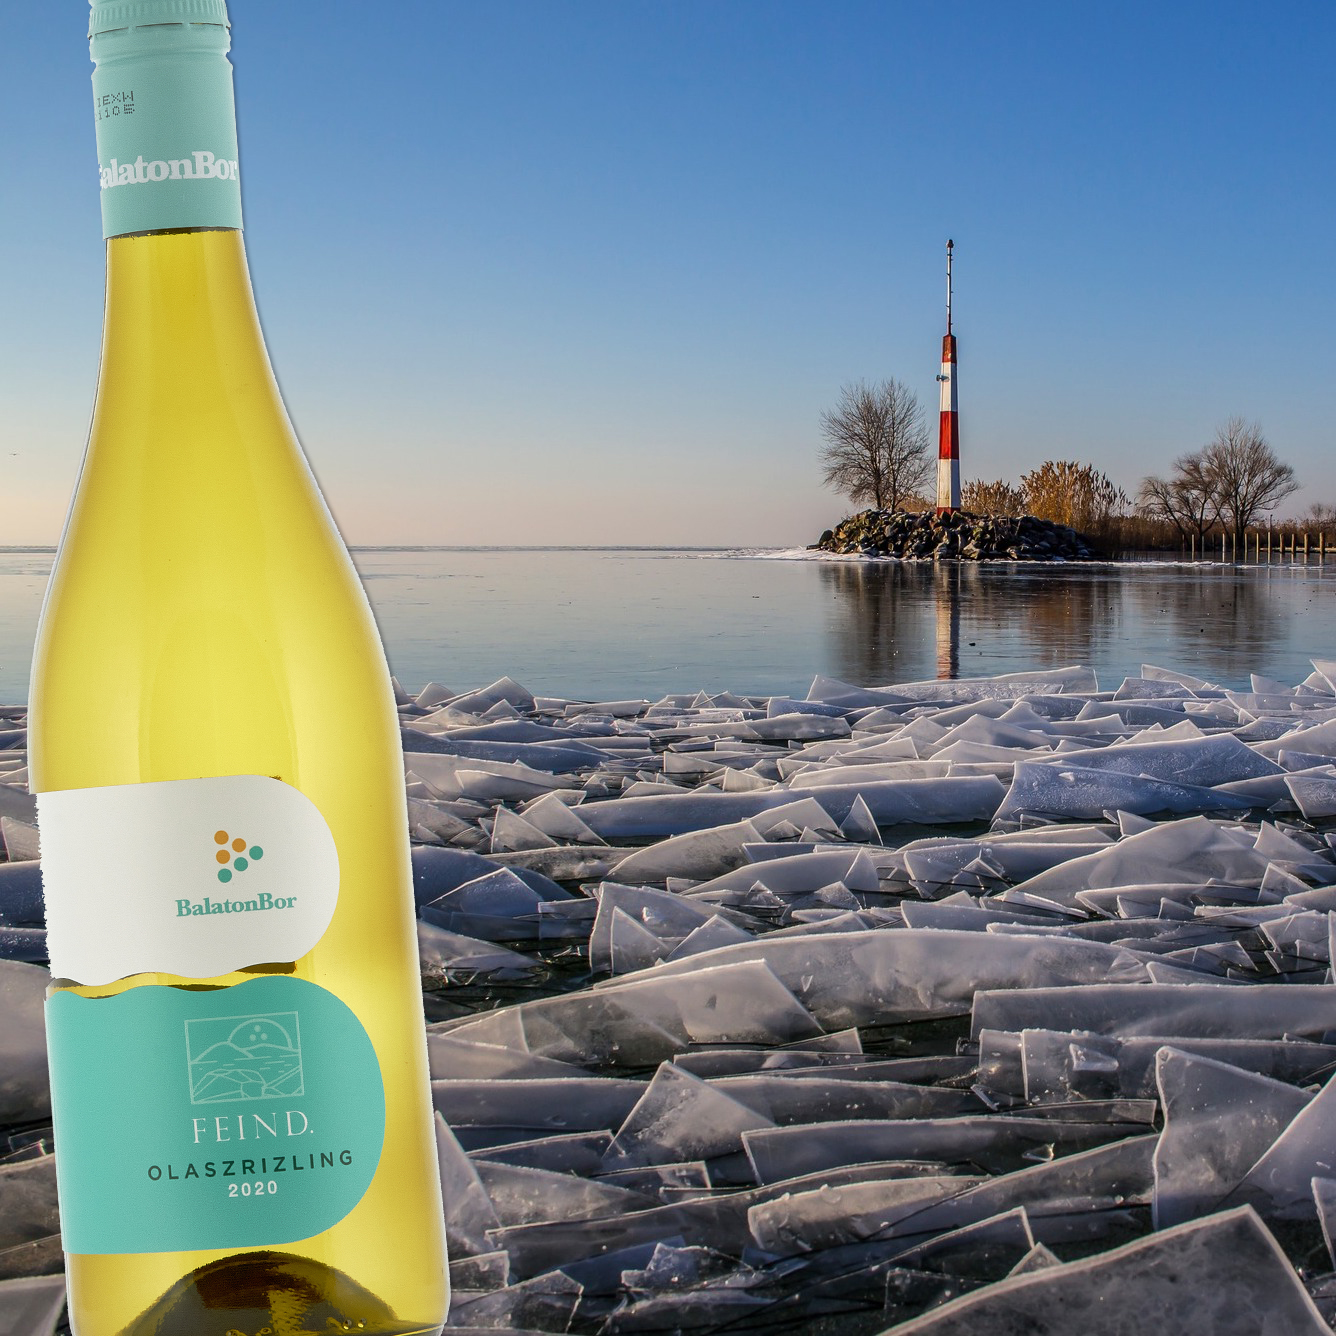 BalatonBor – the wine - of lake the Hungarianwines